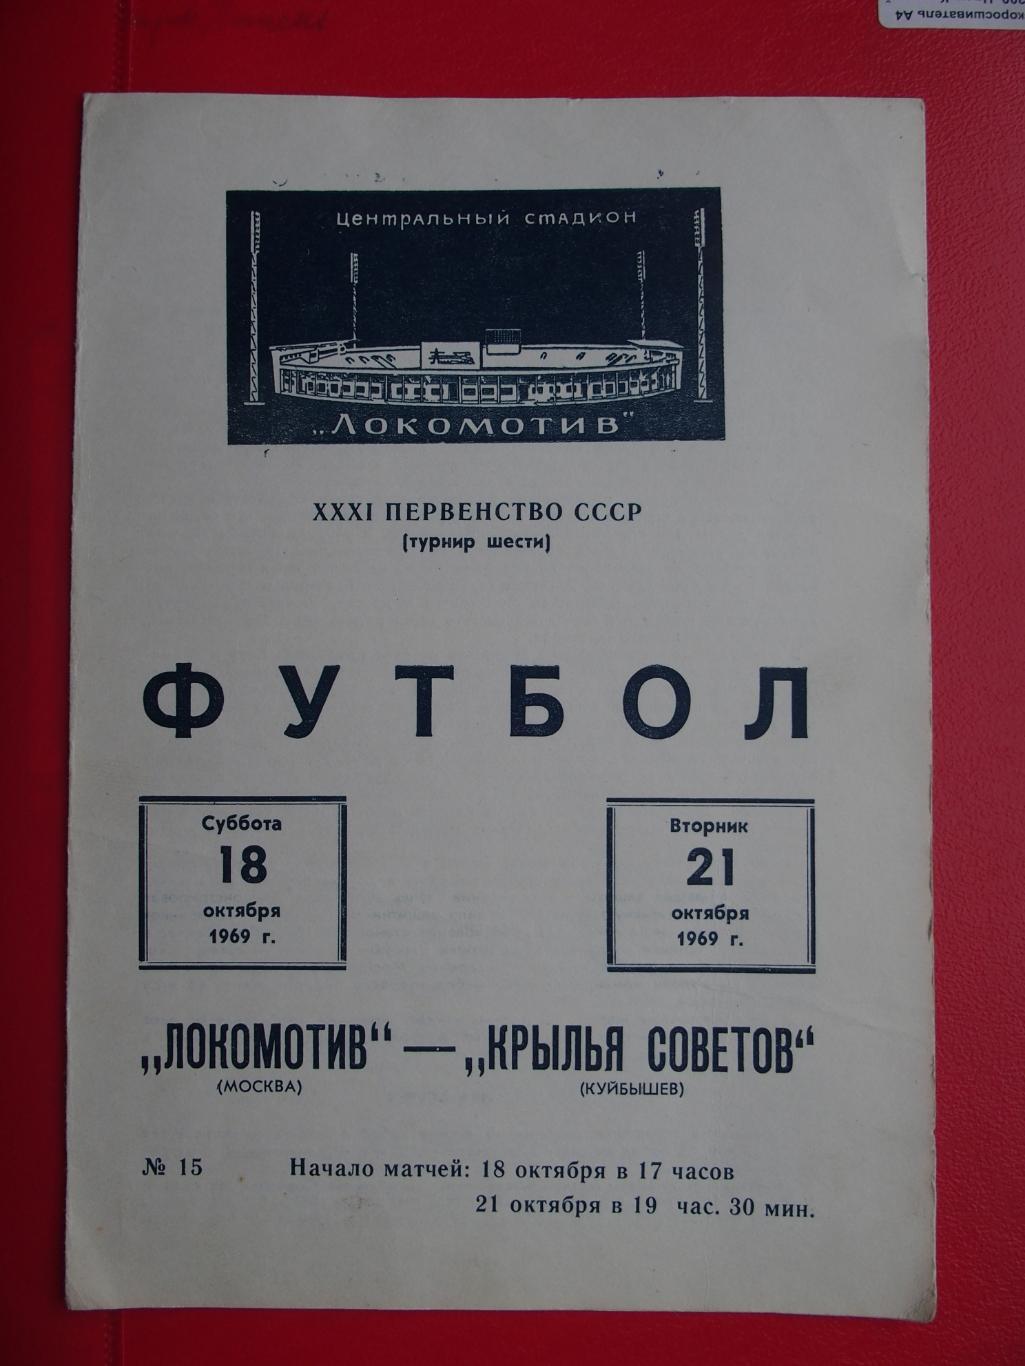 Локомотив Москва - Крылья Советов Куйбышев. 18-21.10.1969 г.